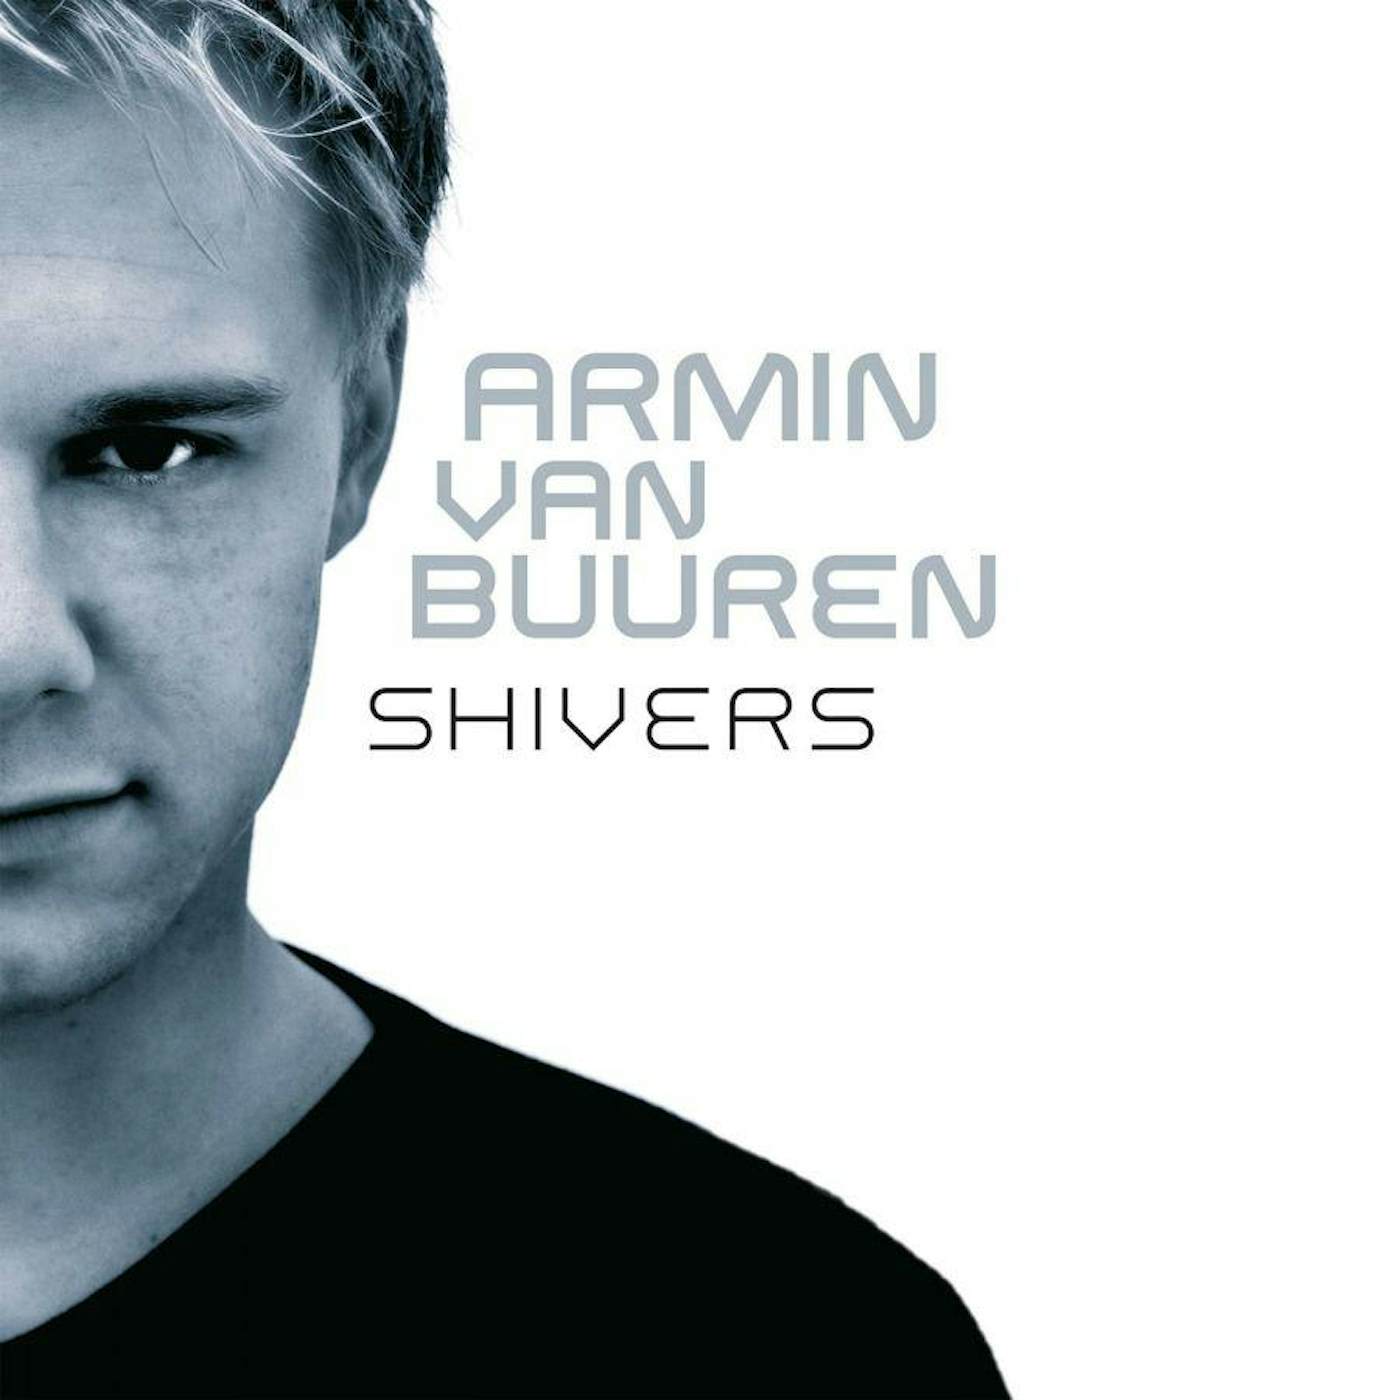 Armin van Buuren Shivers Vinyl Record